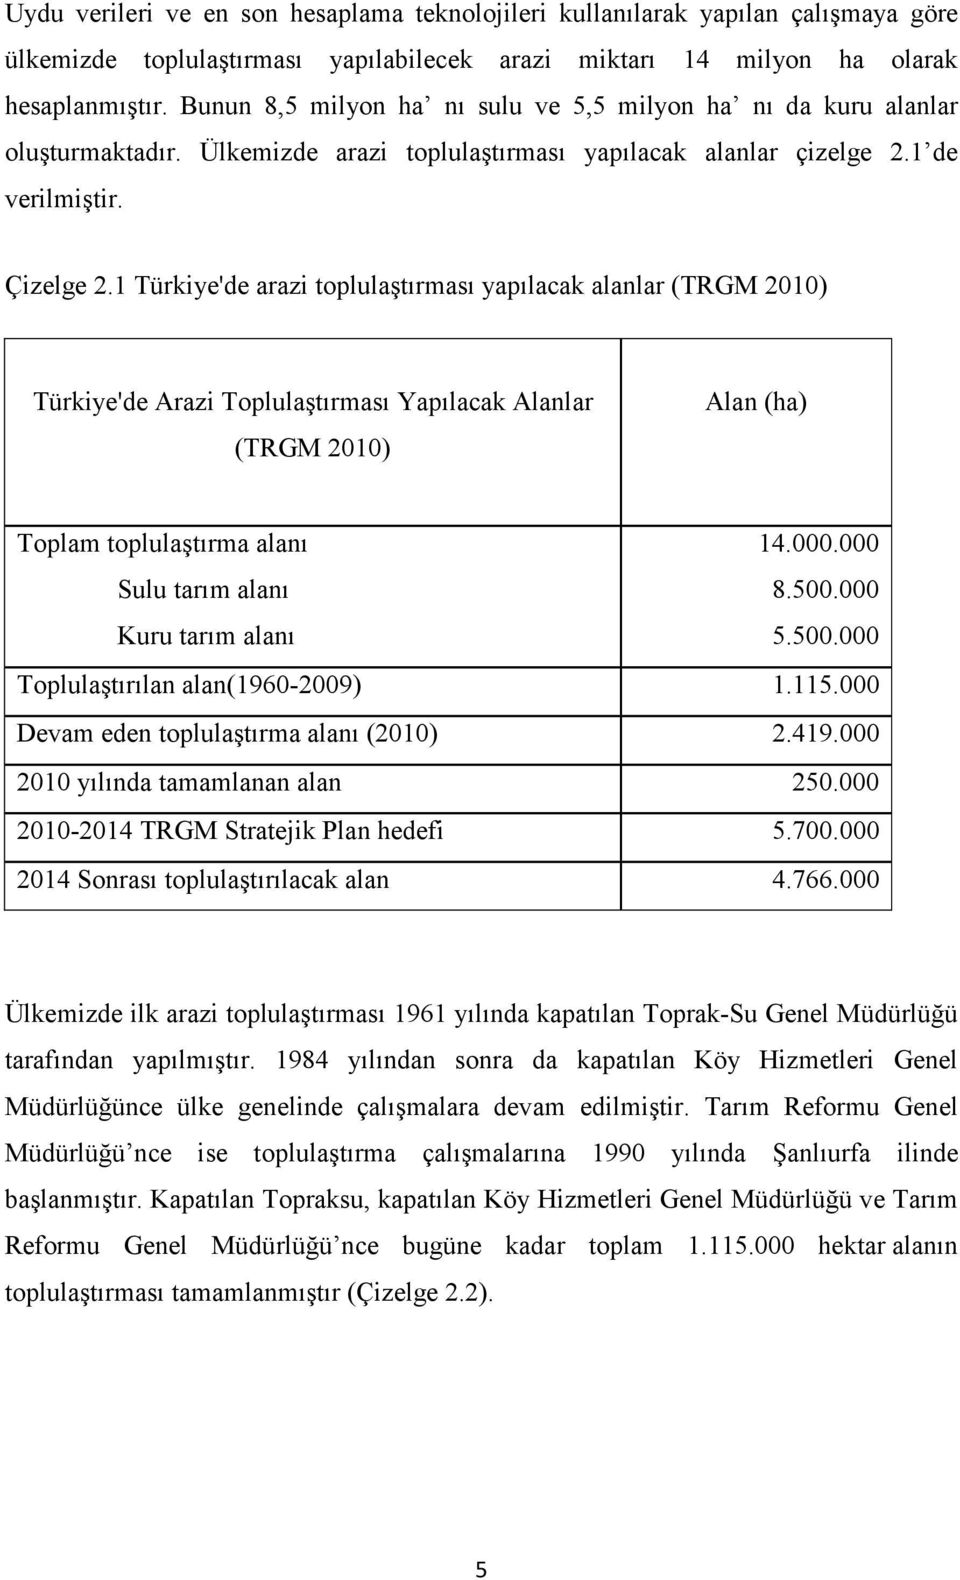 1 Türkiye'de arazi toplulaştırması yapılacak alanlar (TRGM 2010) Türkiye'de Arazi Toplulaştırması Yapılacak Alanlar (TRGM 2010) Alan (ha) Toplam toplulaştırma alanı Sulu tarım alanı Kuru tarım alanı